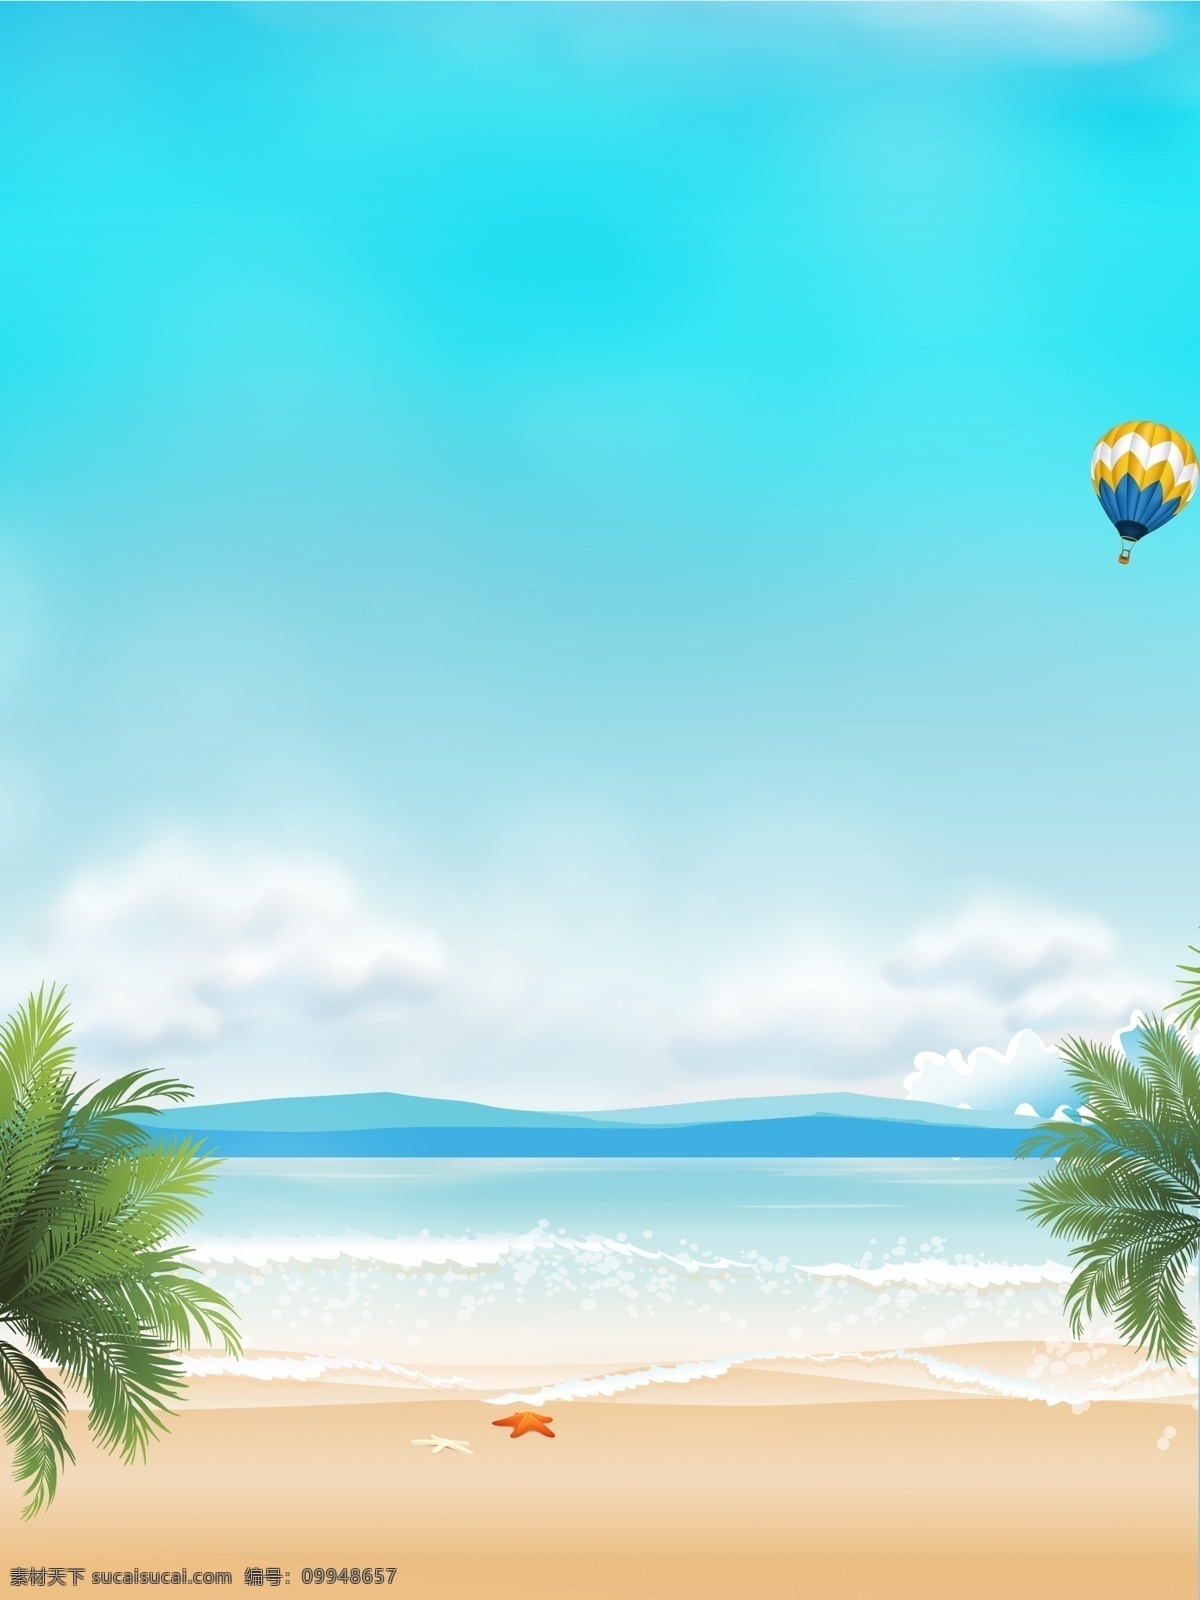 手绘 夏季 旅游 海边 背景 蓝天背景 沙滩背景 海边背景 手绘背景 冰爽夏日 卡通背景 阳光背景